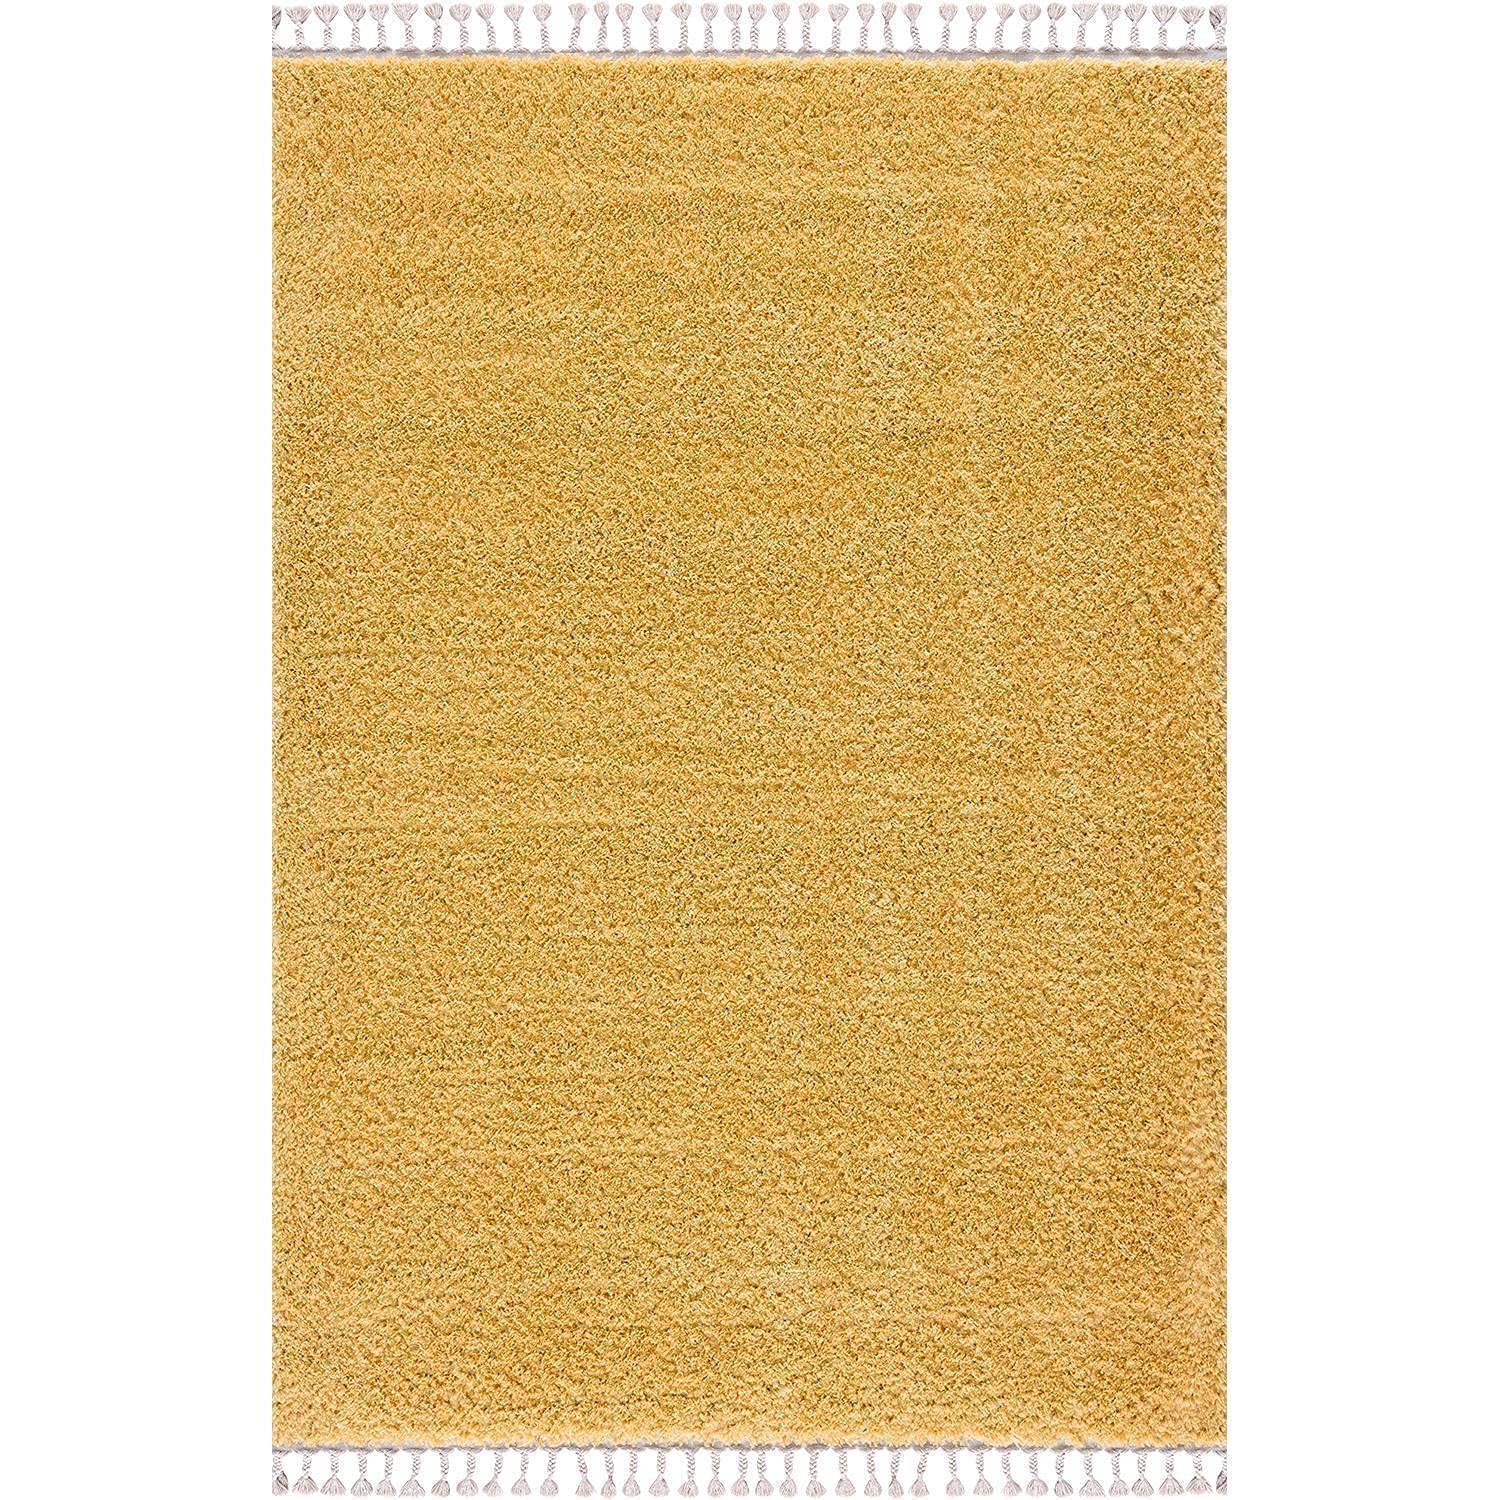 carpet city Hochflor Teppich Wohnzimmer - Einfarbig Gelb - 160x230 cm - Shaggyteppich Langflor - Kettfäden - Schlafzimmerteppich Flauschig Weich - Moderne Wohnzimmerteppiche